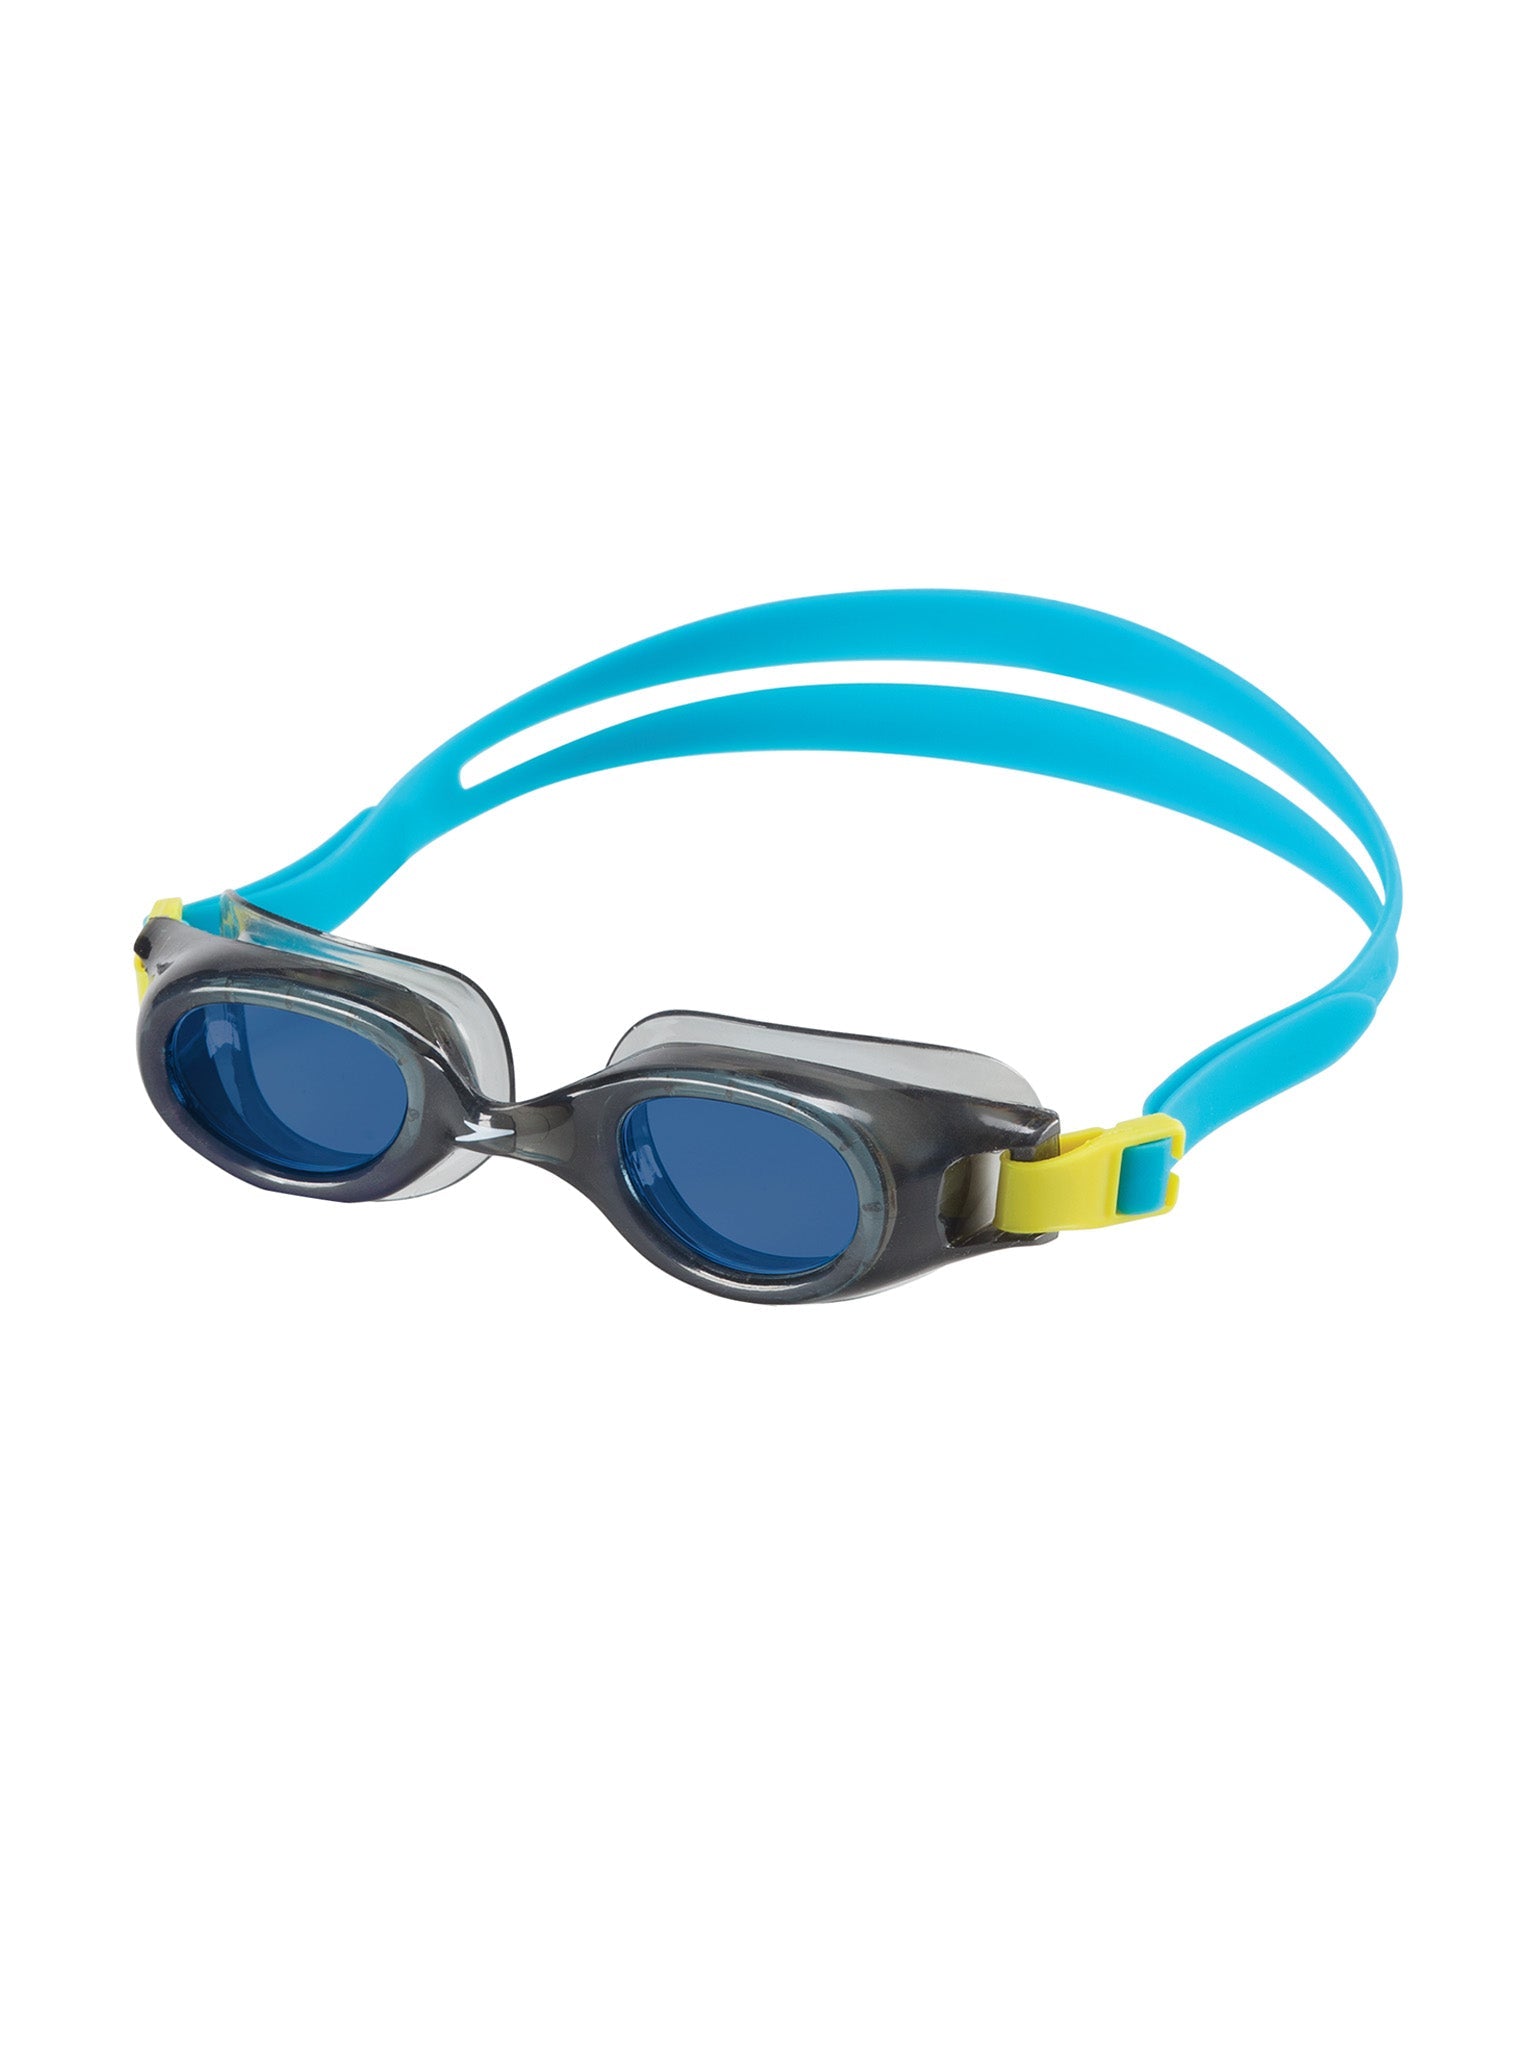 Lunettes de natation Hydrospex Junior - Fumée/Turquoise